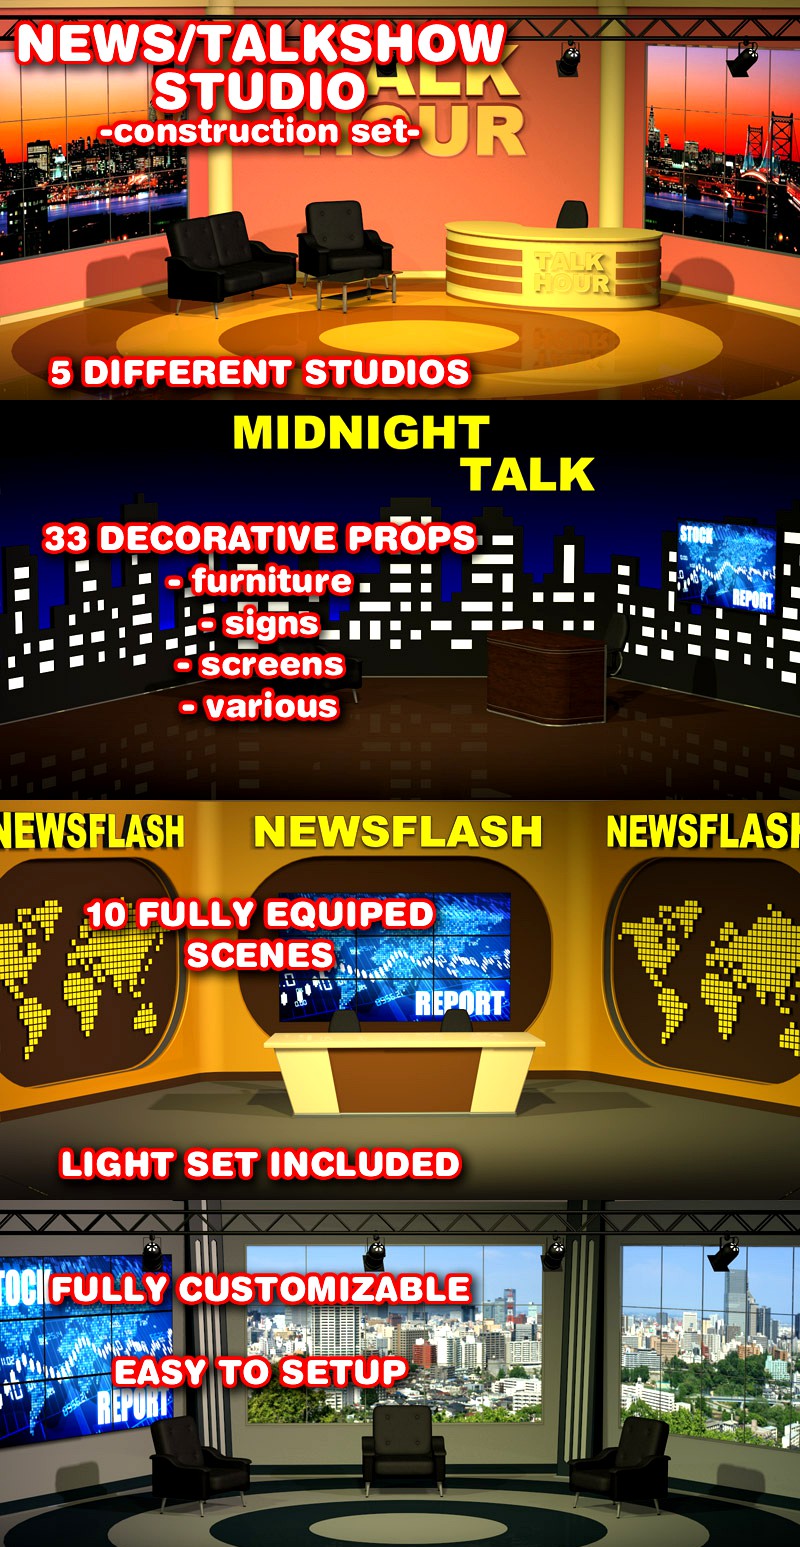 News_Talkshow Studio